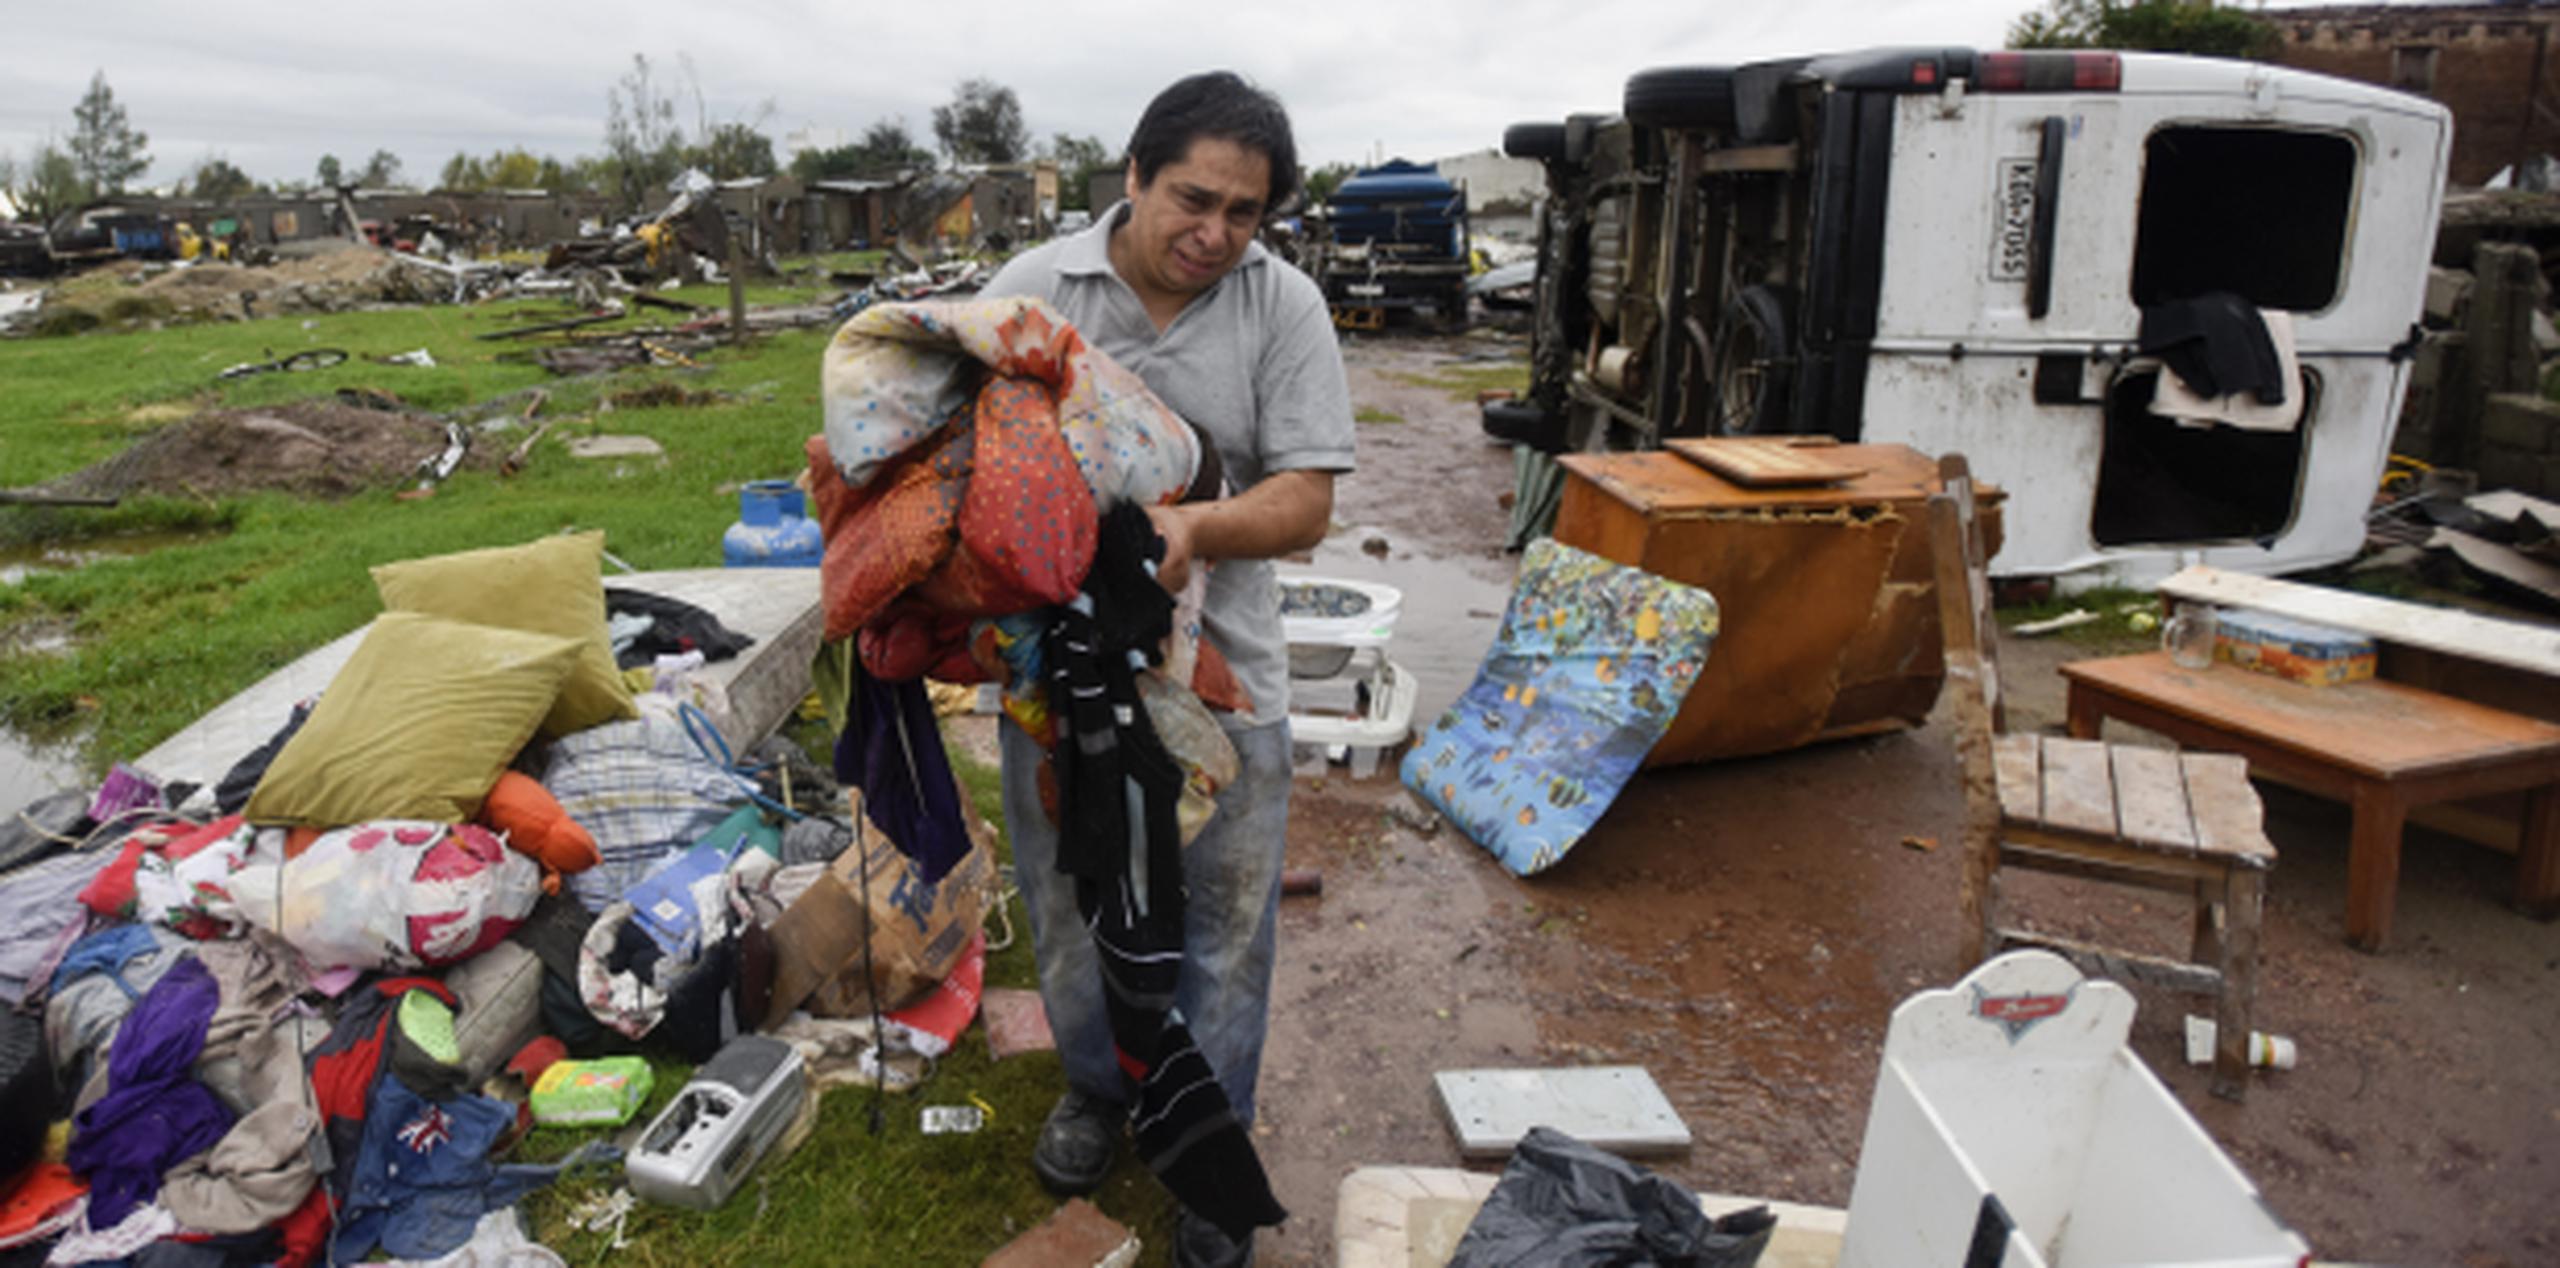 Un residente de la ciudad de Dolores llora al recoger sus pertenencias sacudidas por el tornado. (AP / Matilde Campodonico)